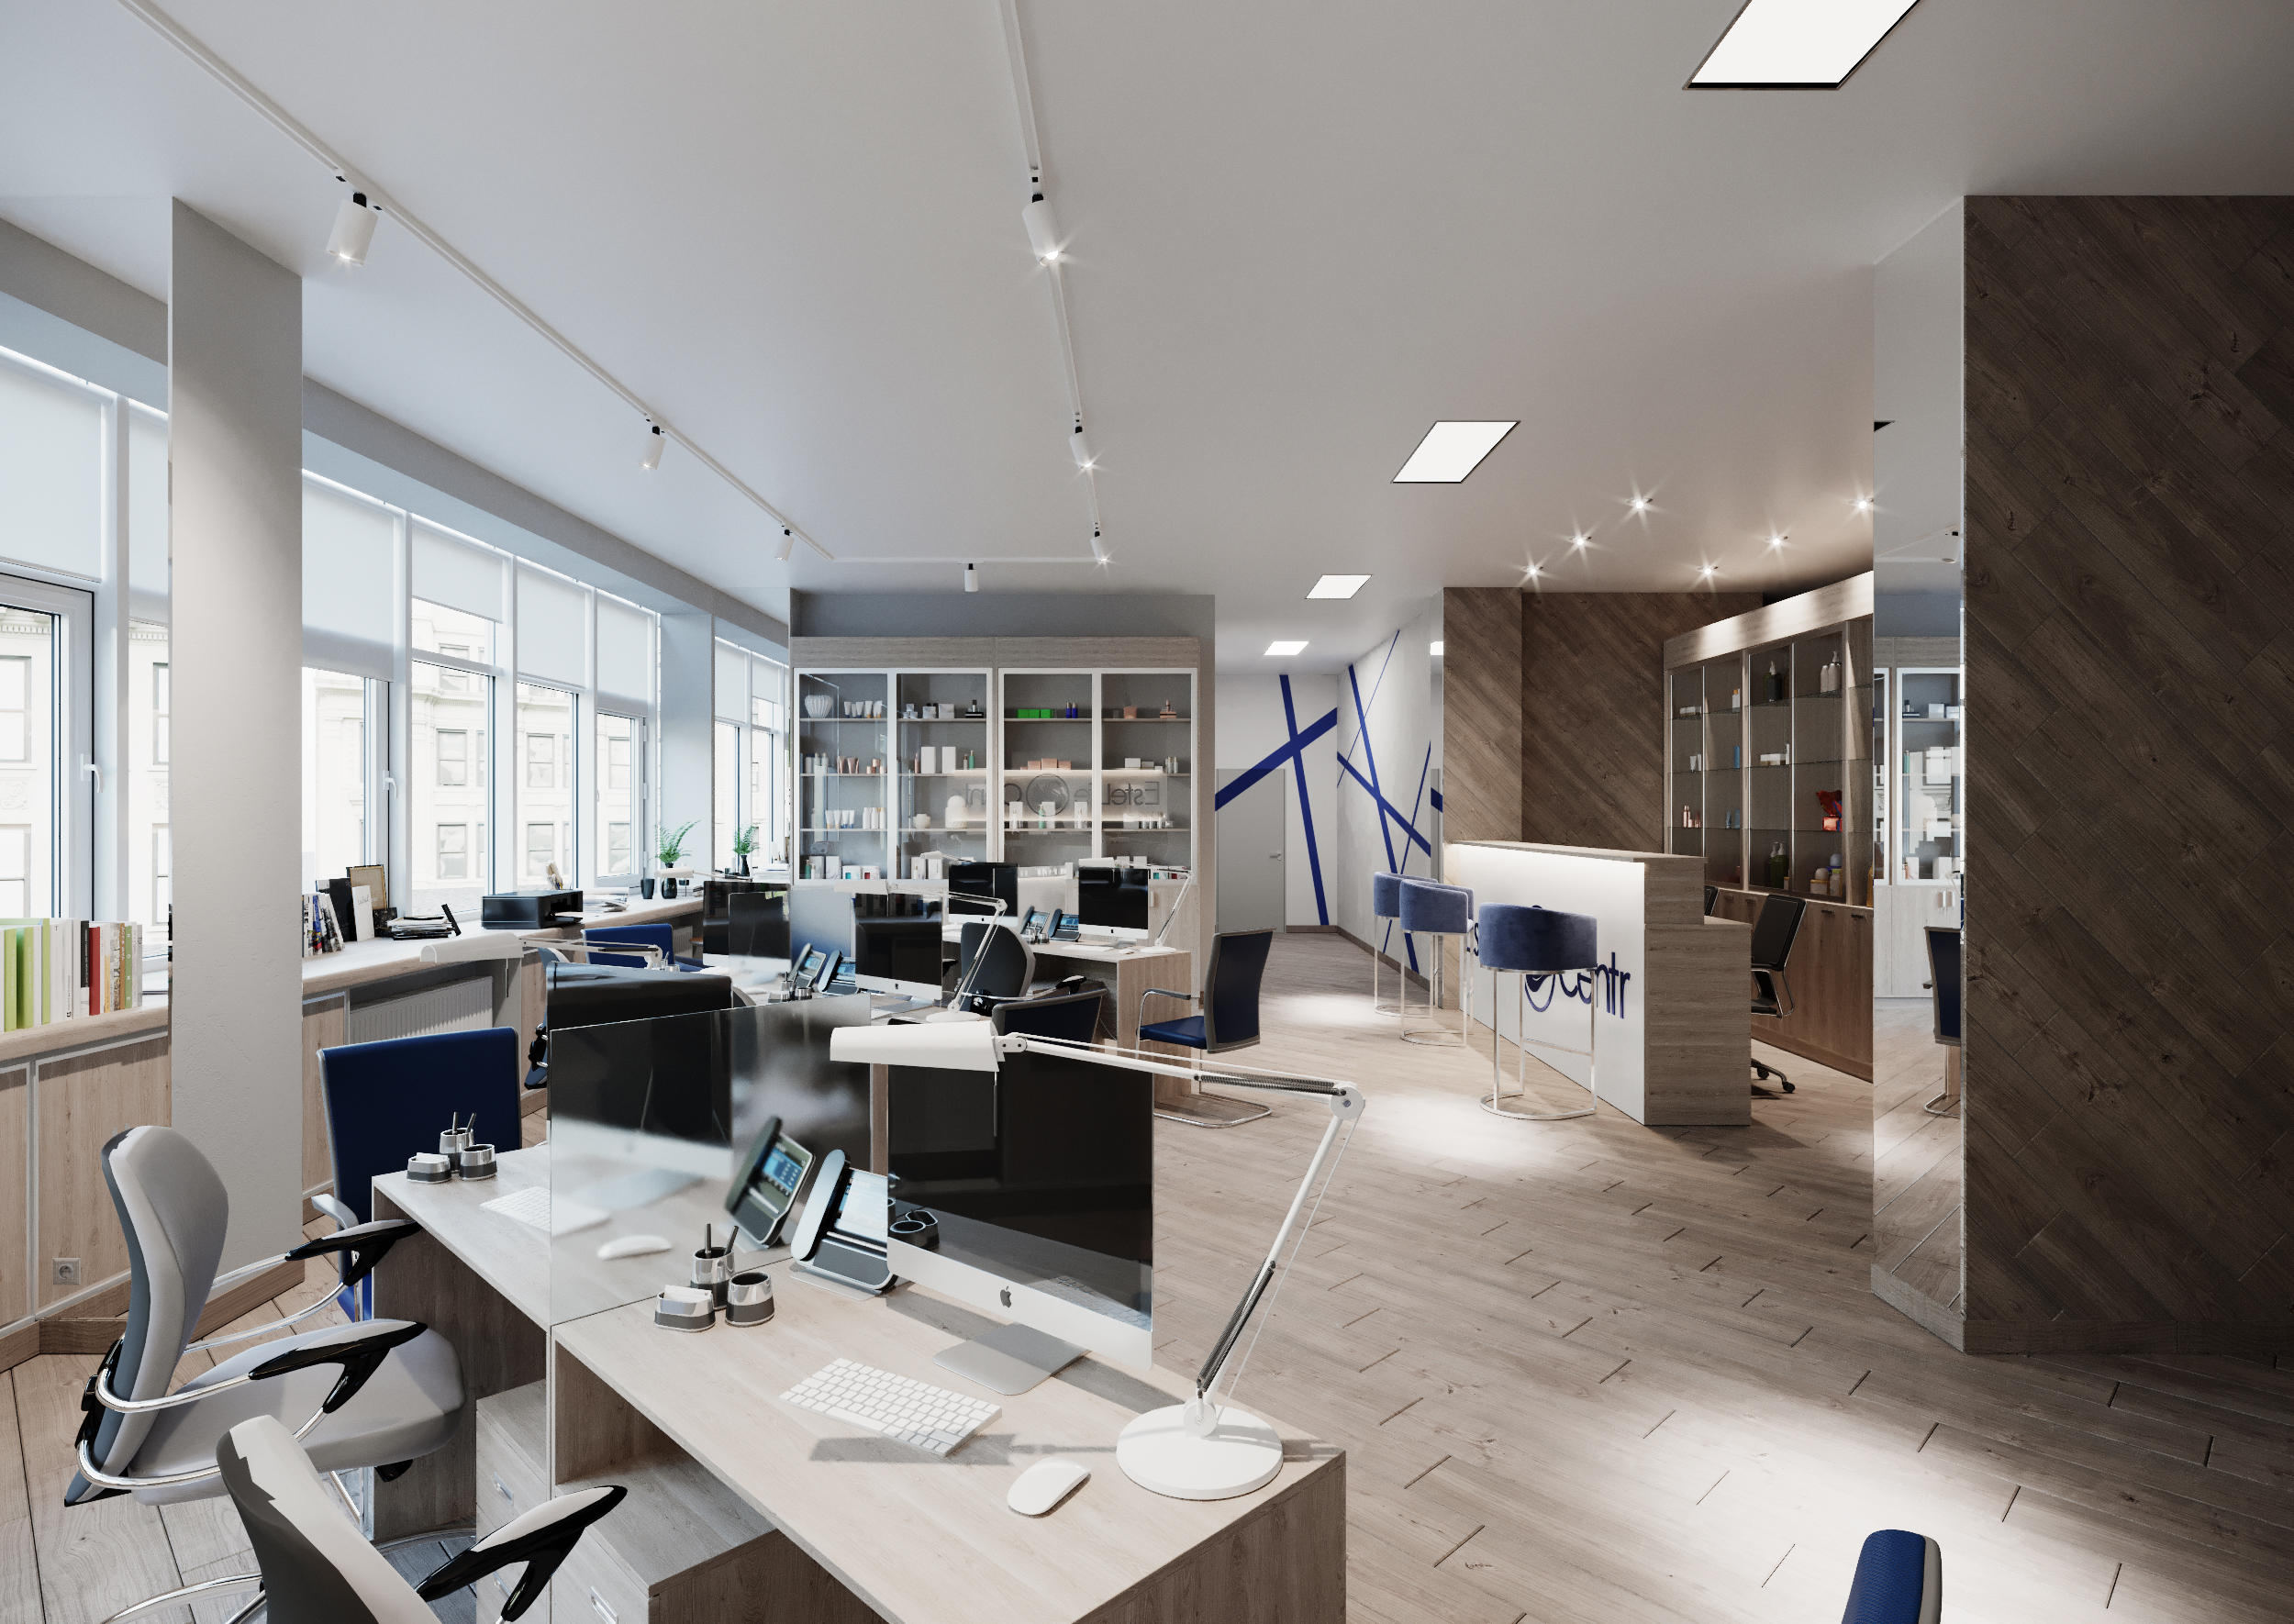 Ufficio moderno 3D Archvis in 3d max corona render immagine